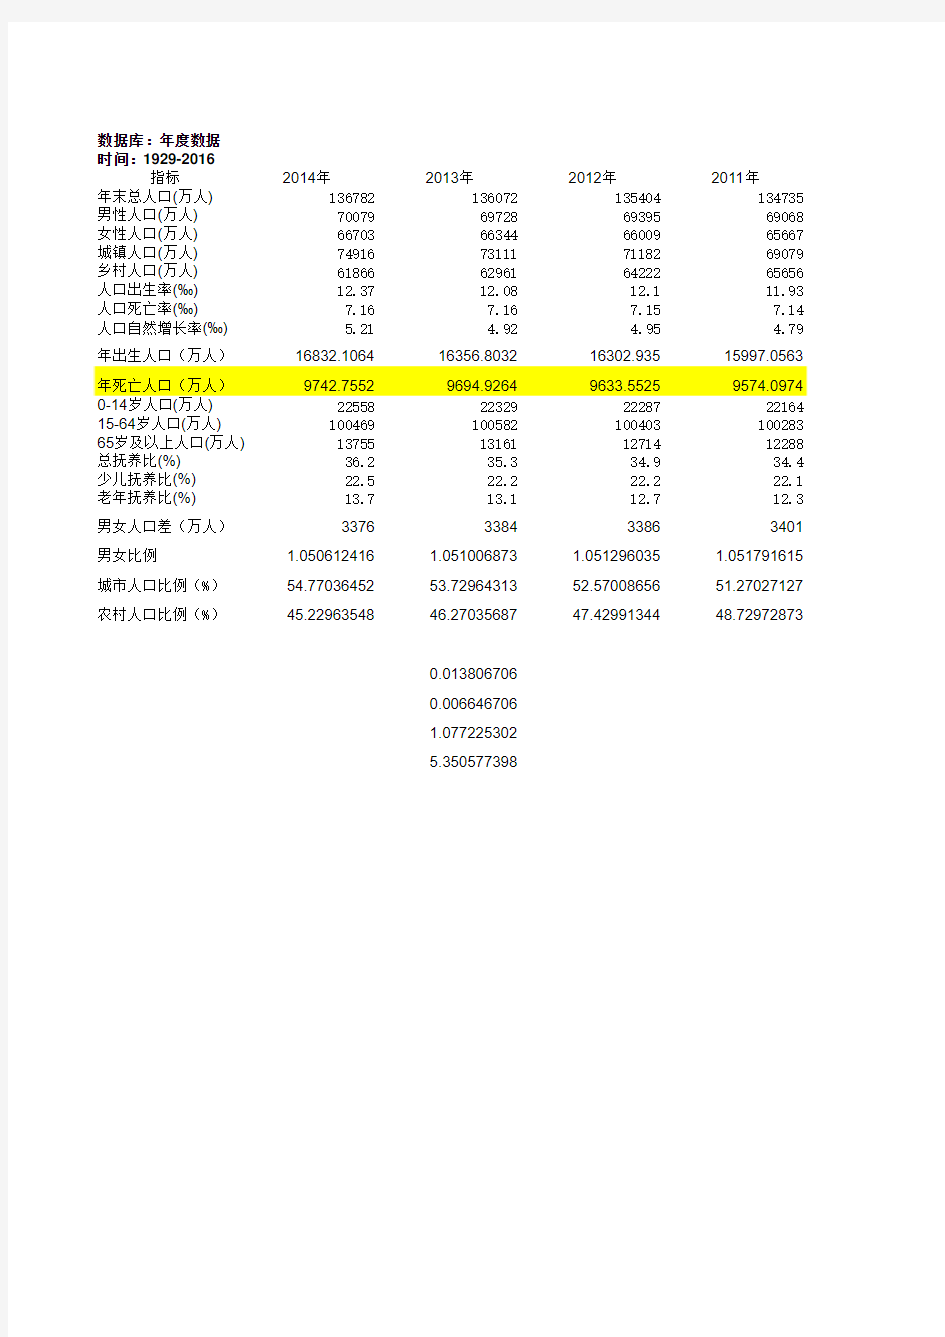 1949-2014中国人口数据及作图分析(数据来自国家统计局)